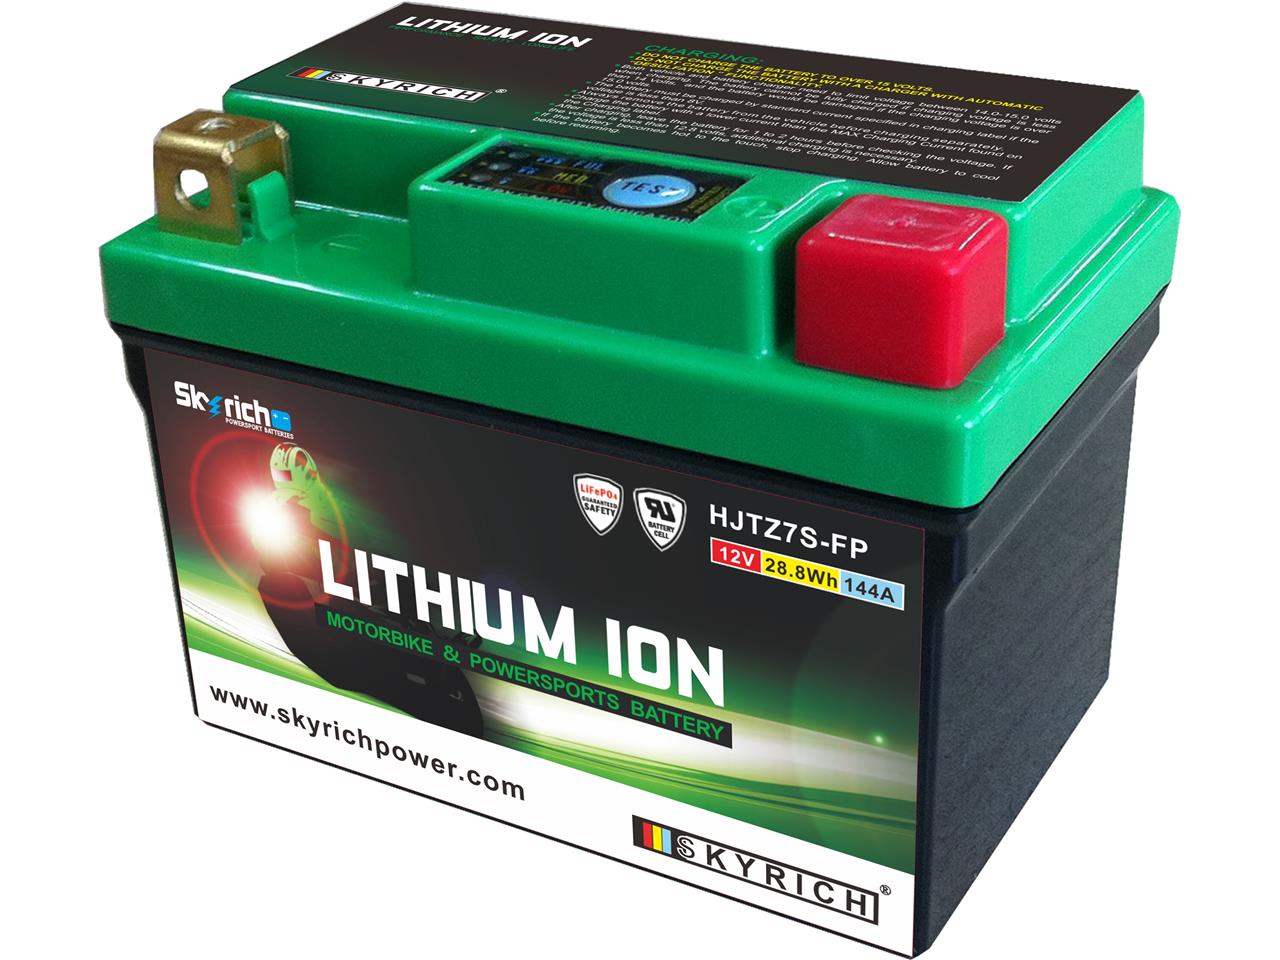 Batterie marque Skyrich type Lithium-Ion référence LTZ7S